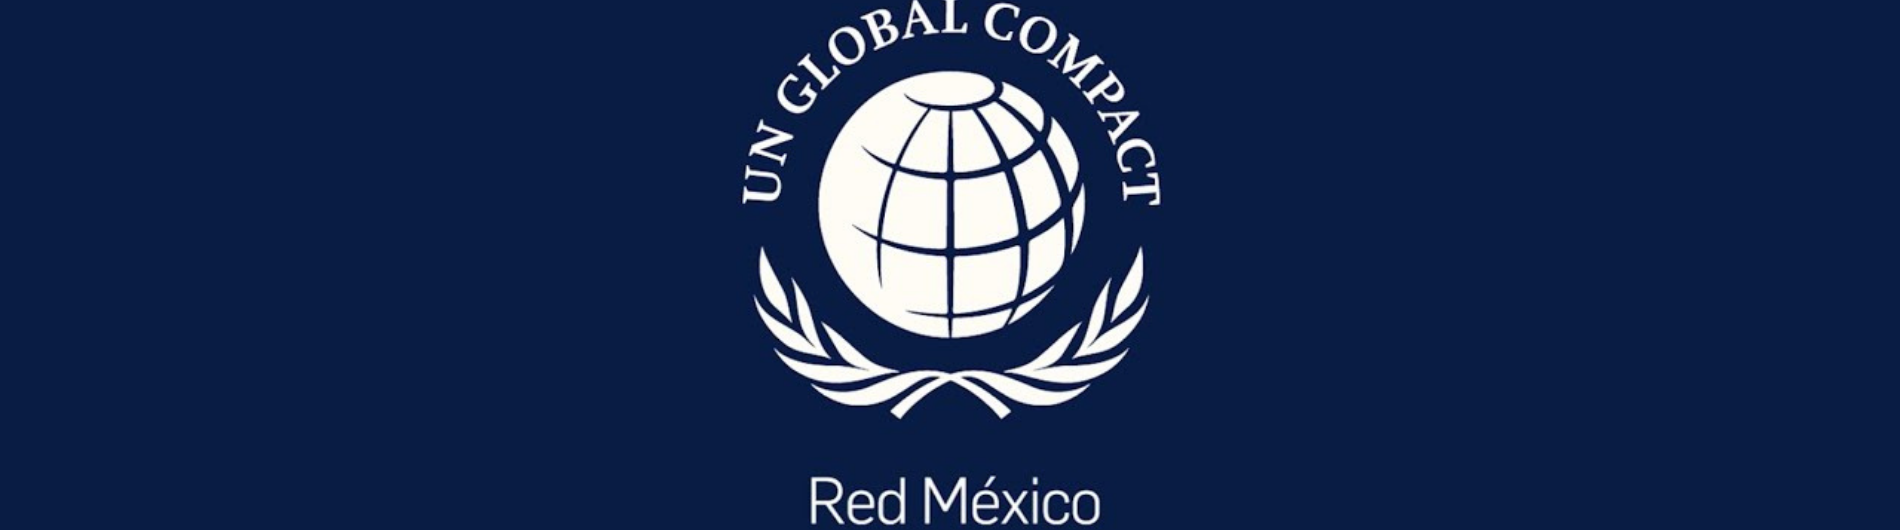 Pacto Global organiza evento en México para acelerar los ODS en las empresas